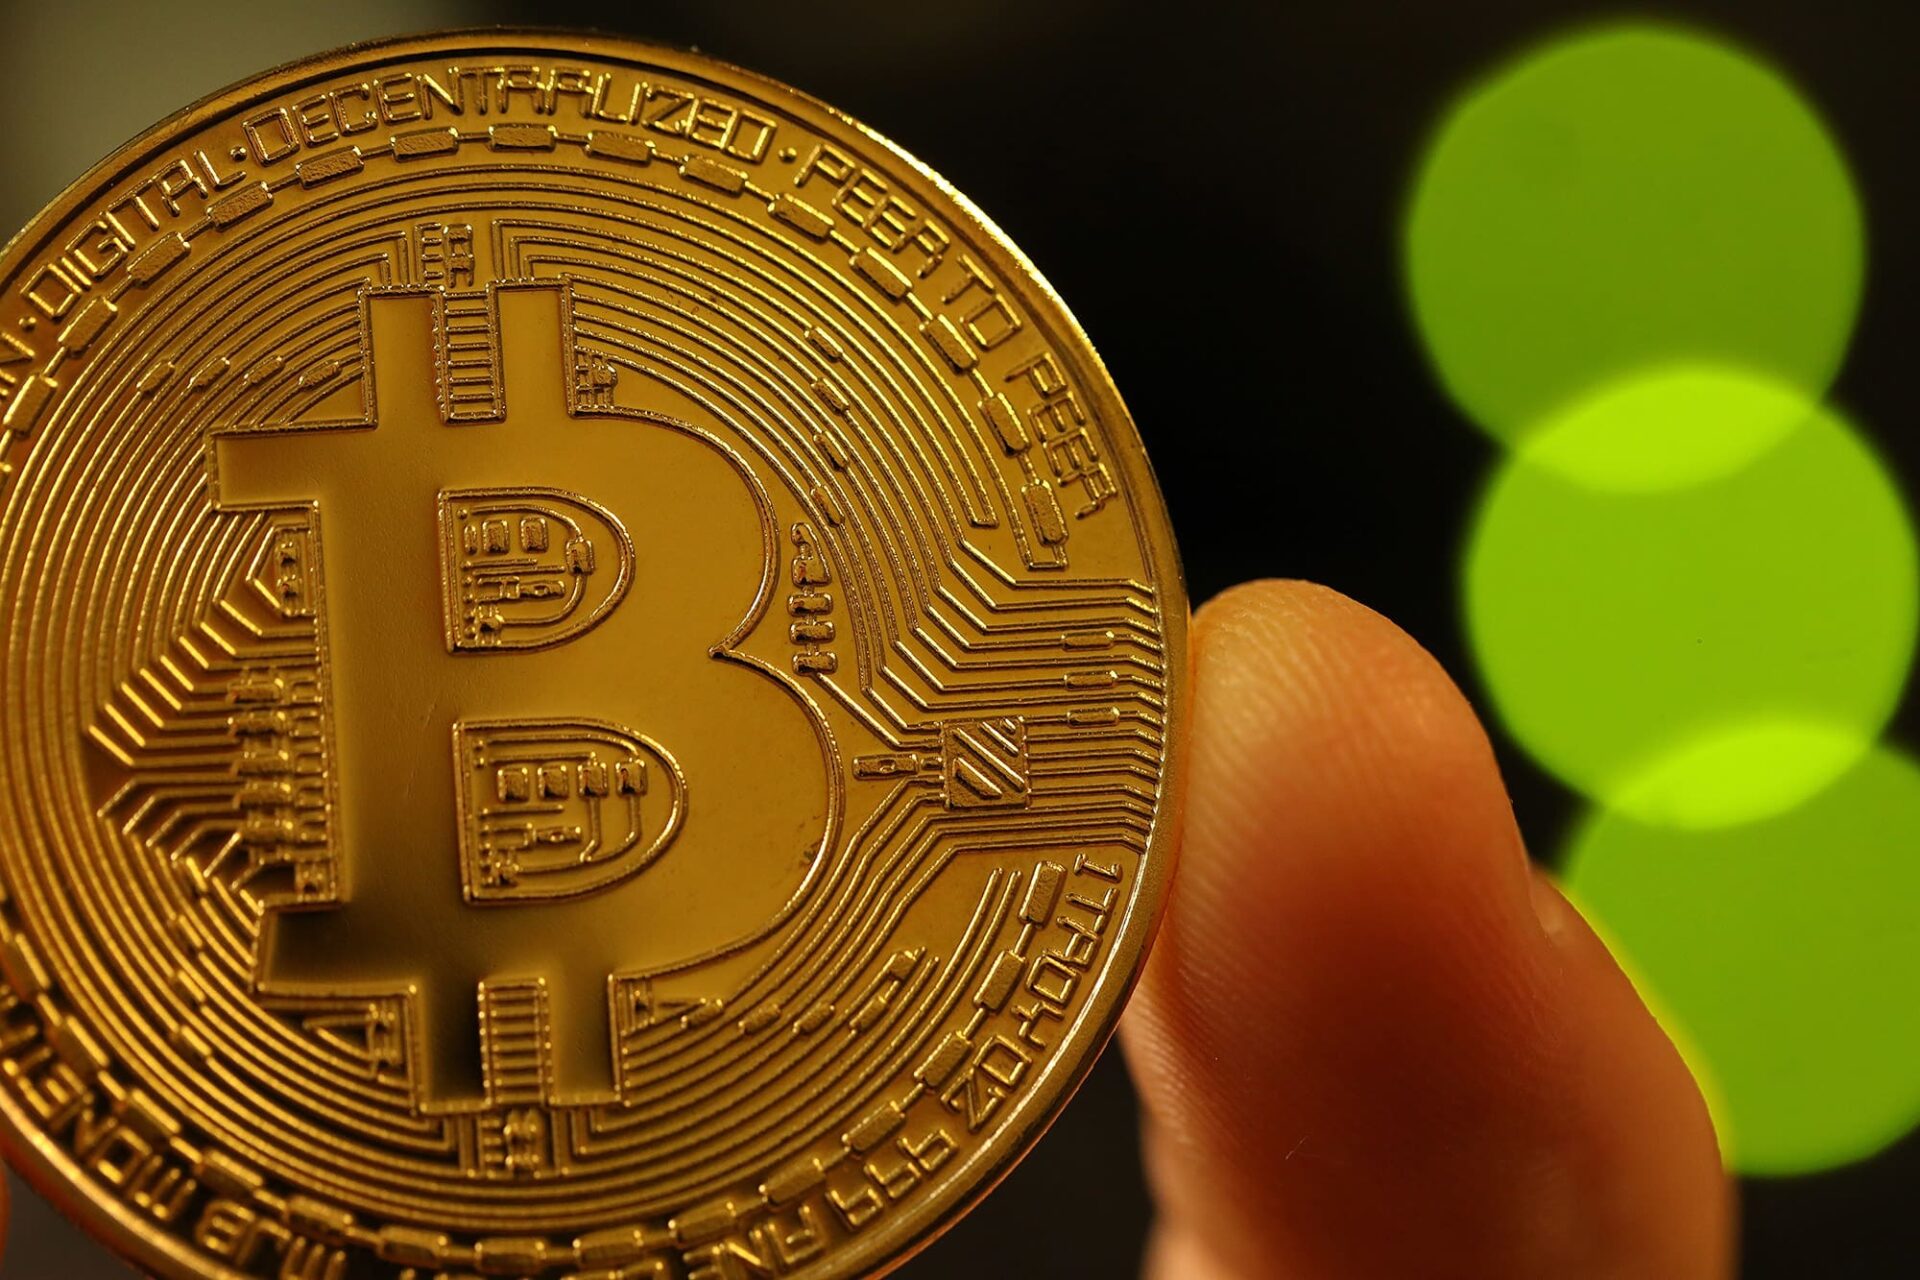 how to exchange money into bitcoins